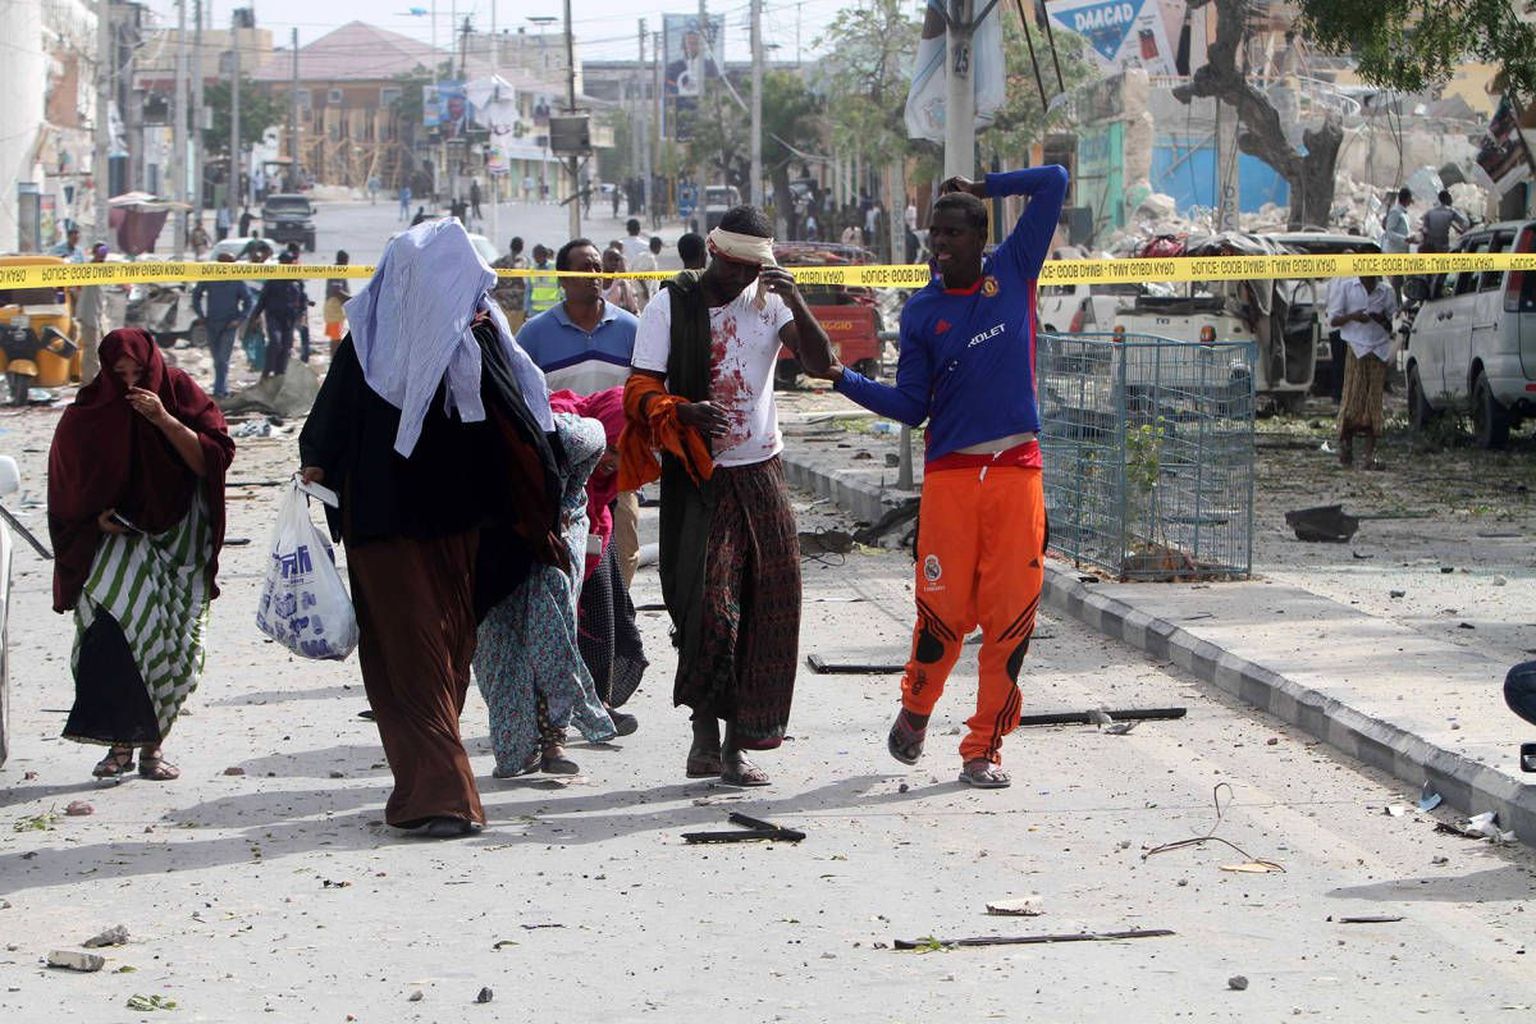 Pärast Al-Shabaabi järjekordset terrorirünnakut Muqdishos